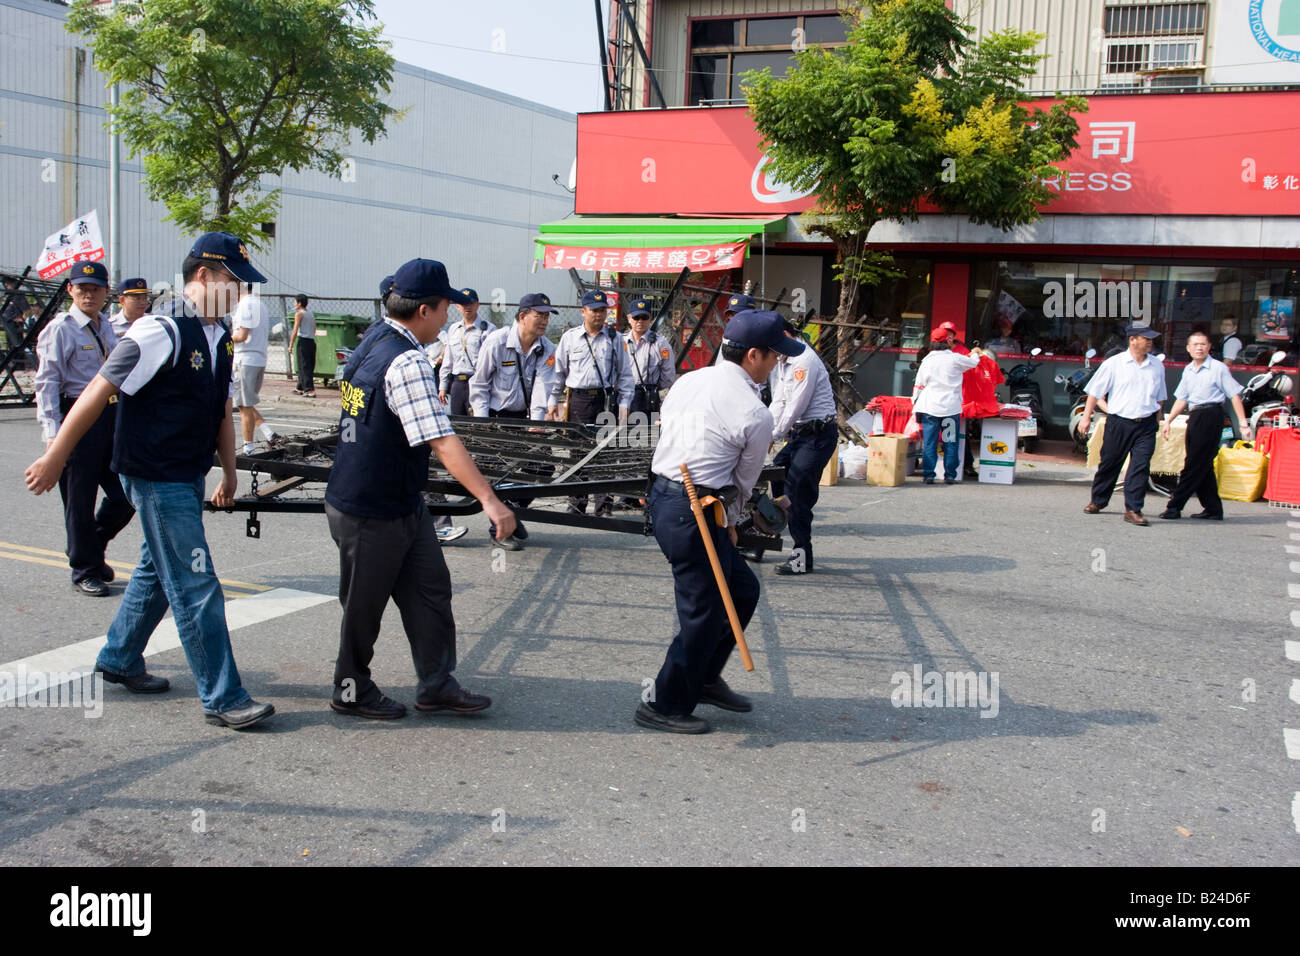 Les agents de police déplacer une barrière de barbelés en place avant d'une manifestation politique, Changhua, Taiwan, ROC Banque D'Images